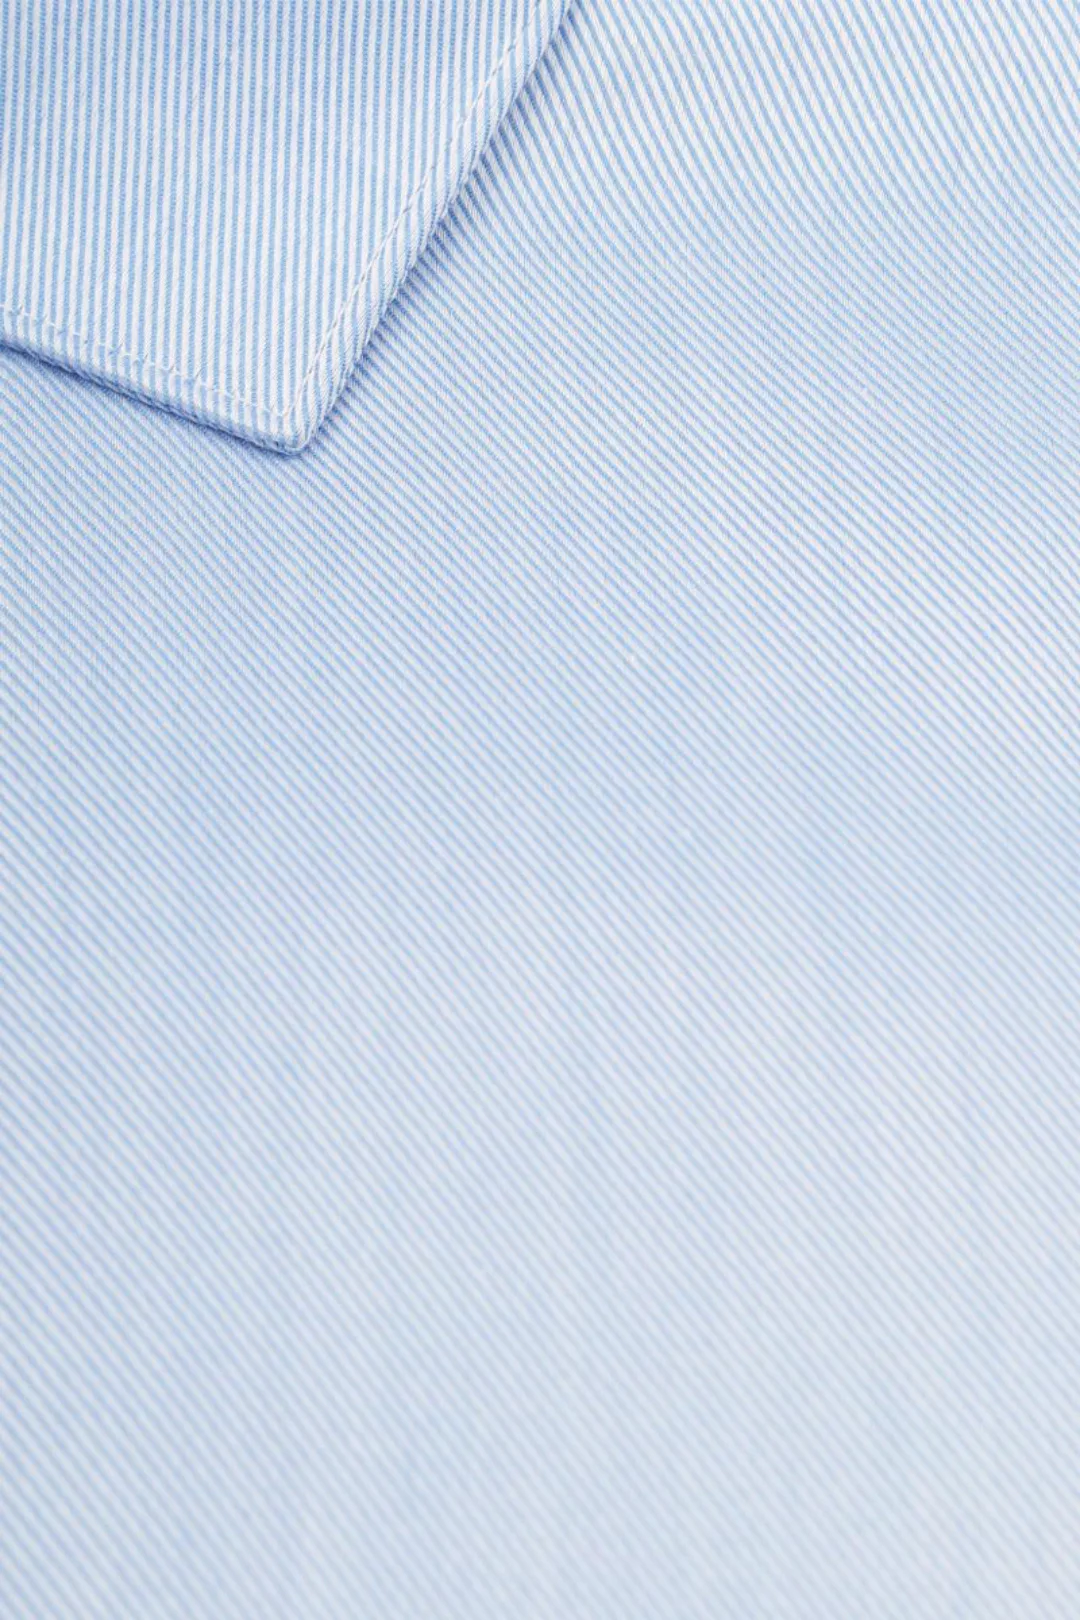 Suitable Hemd Blau DR-04 - Größe 40 günstig online kaufen